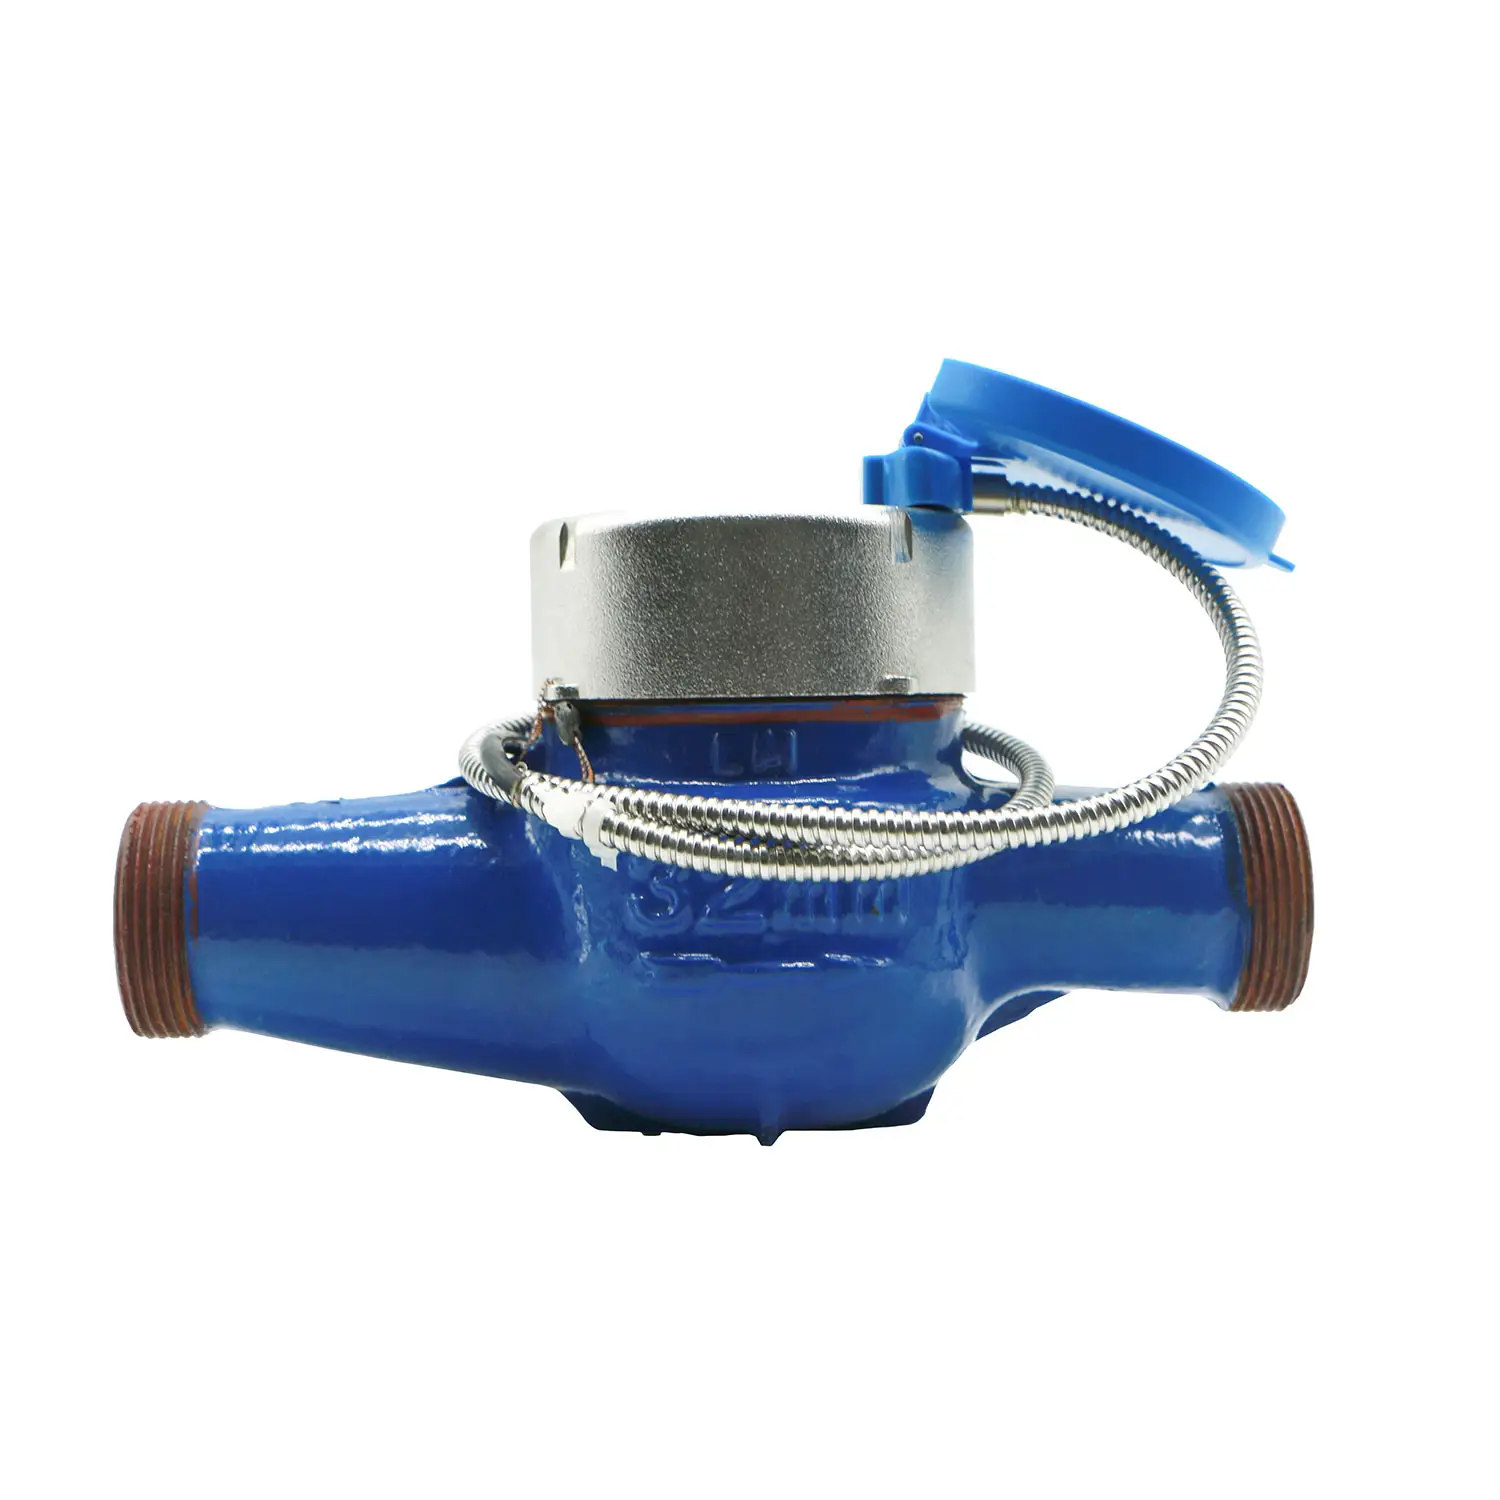 Medidor de agua de chorro único medidor de agua mecánico de chorro múltiple con salida de pulso medidor de agua Bostar